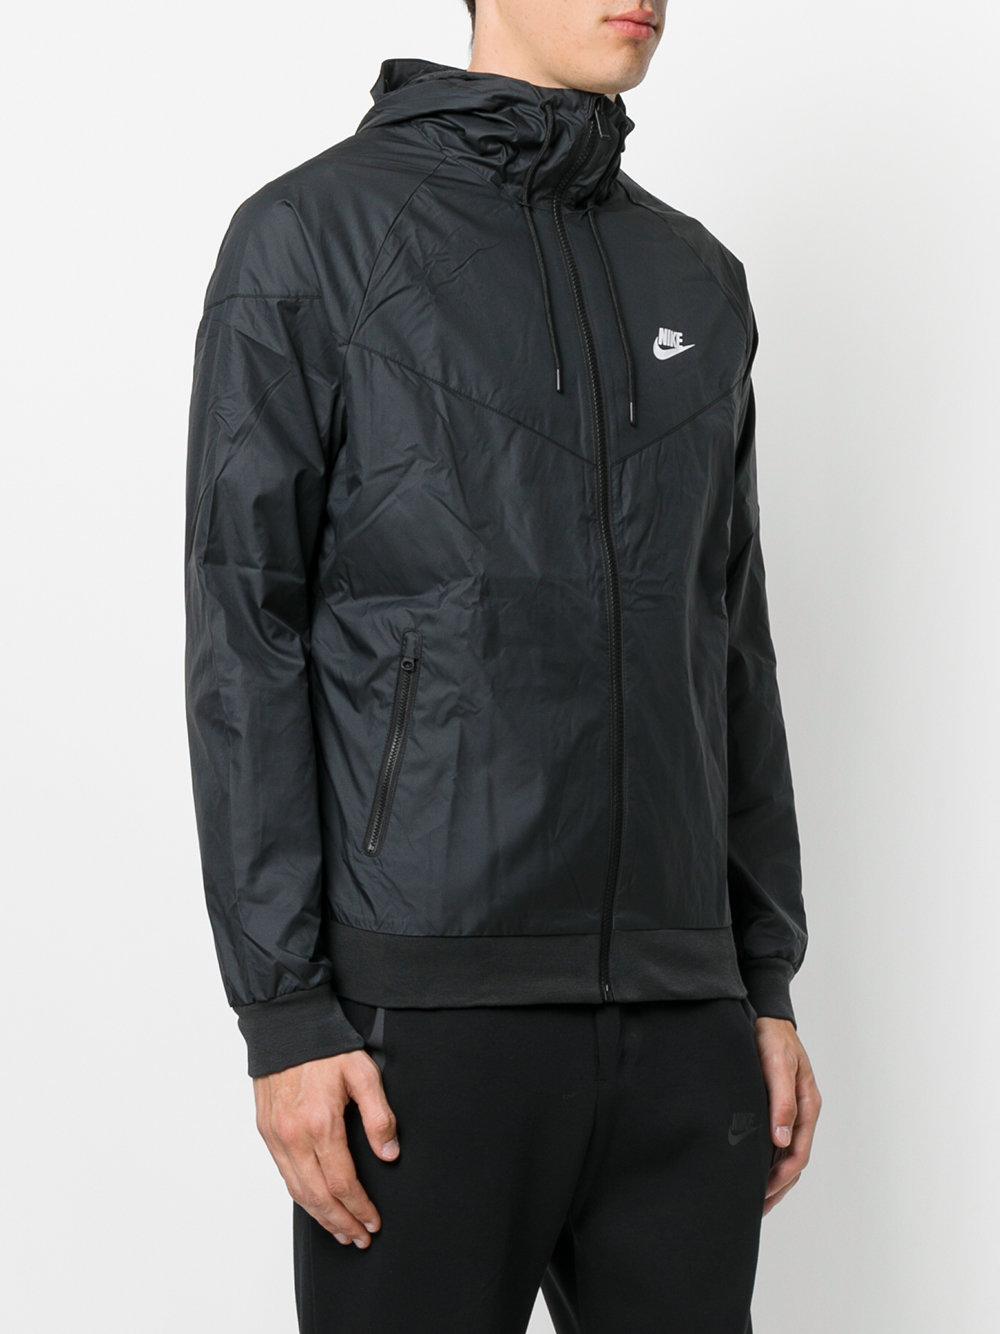 Nike Synthetic Hooded Windbreaker in Black for Men - Lyst